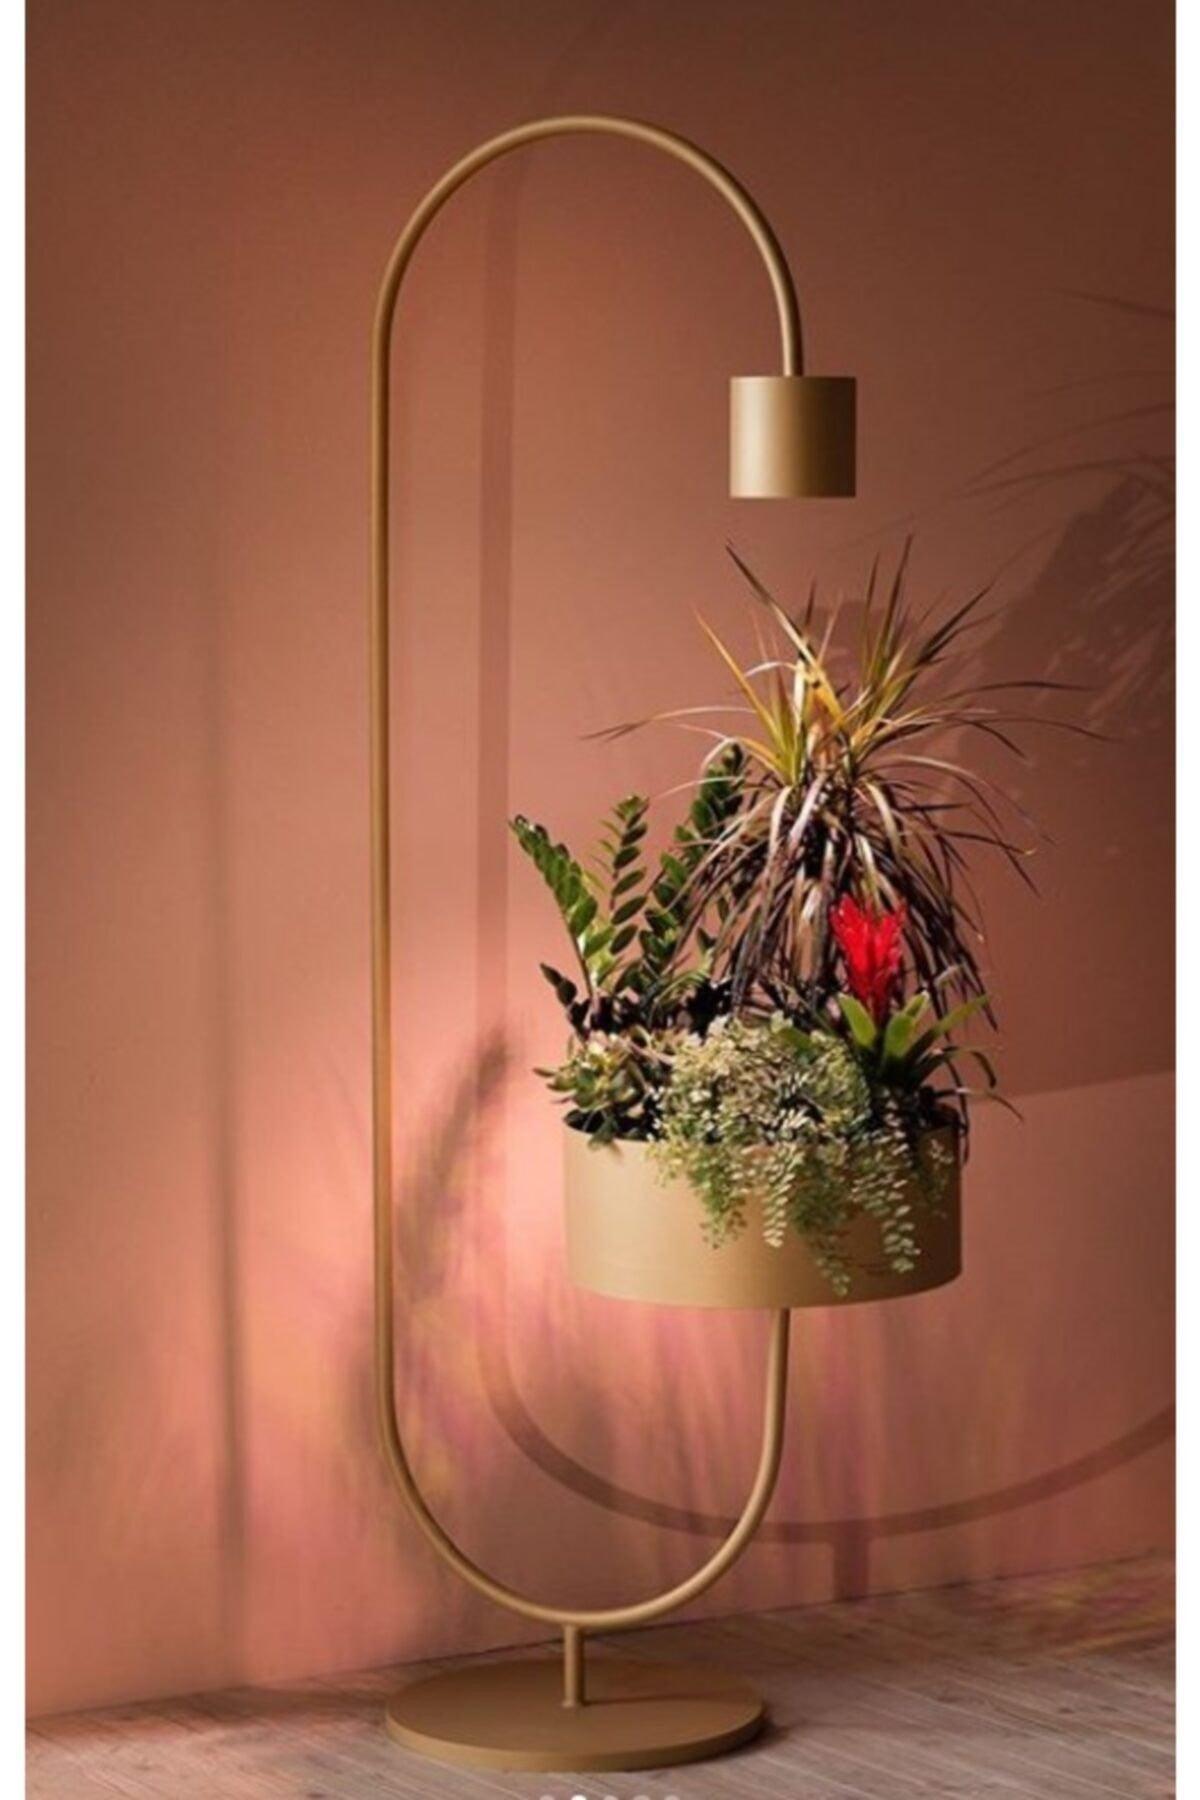 Mira Special Design Corner Floor Lamp Flowerpot With Pot Design Modern Floor Lamp Lighting - Swordslife